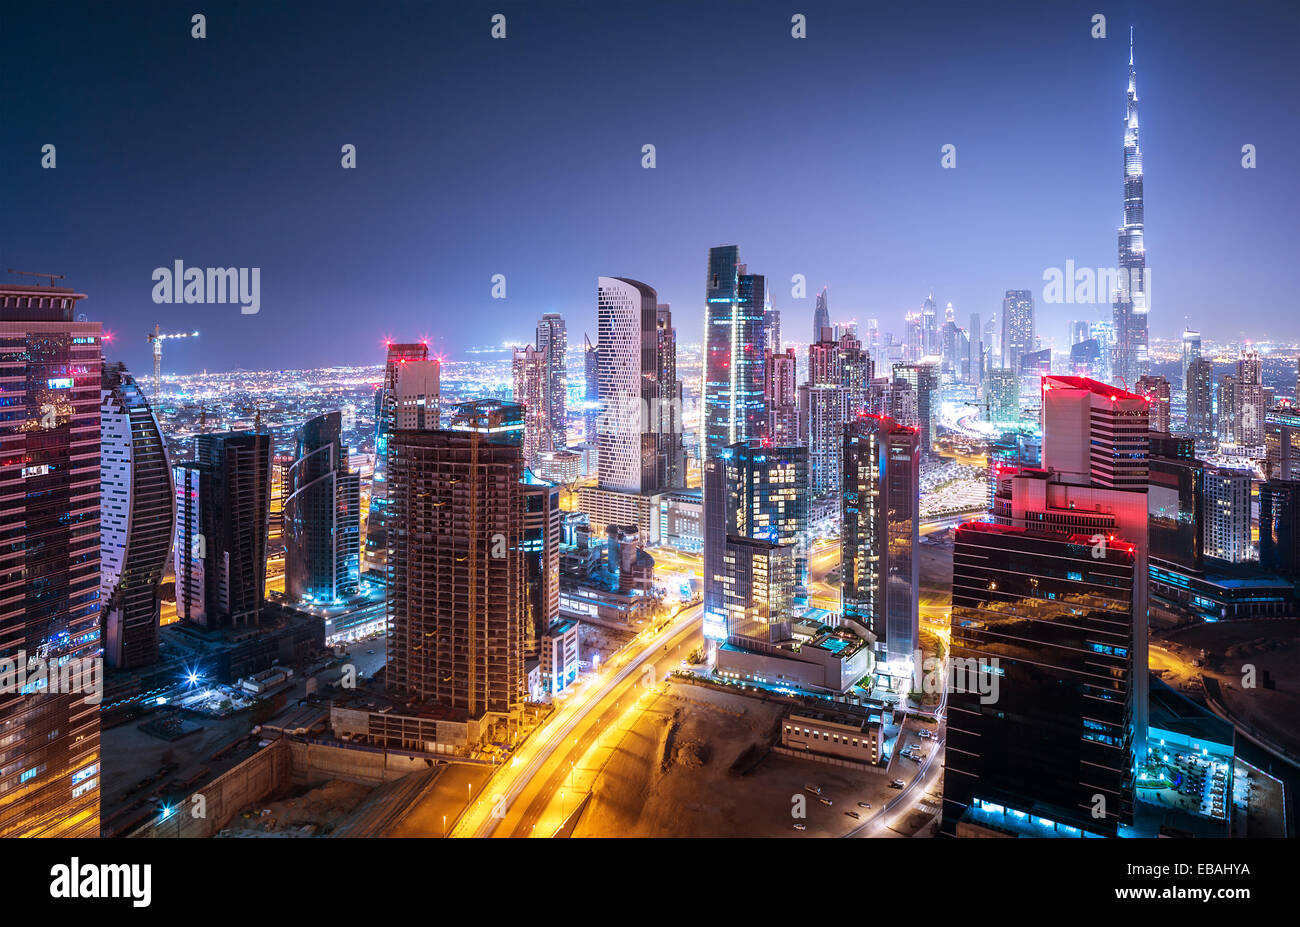 Belle nuit paysage urbain de Dubaï, Émirats arabes unis, l'architecture arabe futuriste moderne Banque D'Images